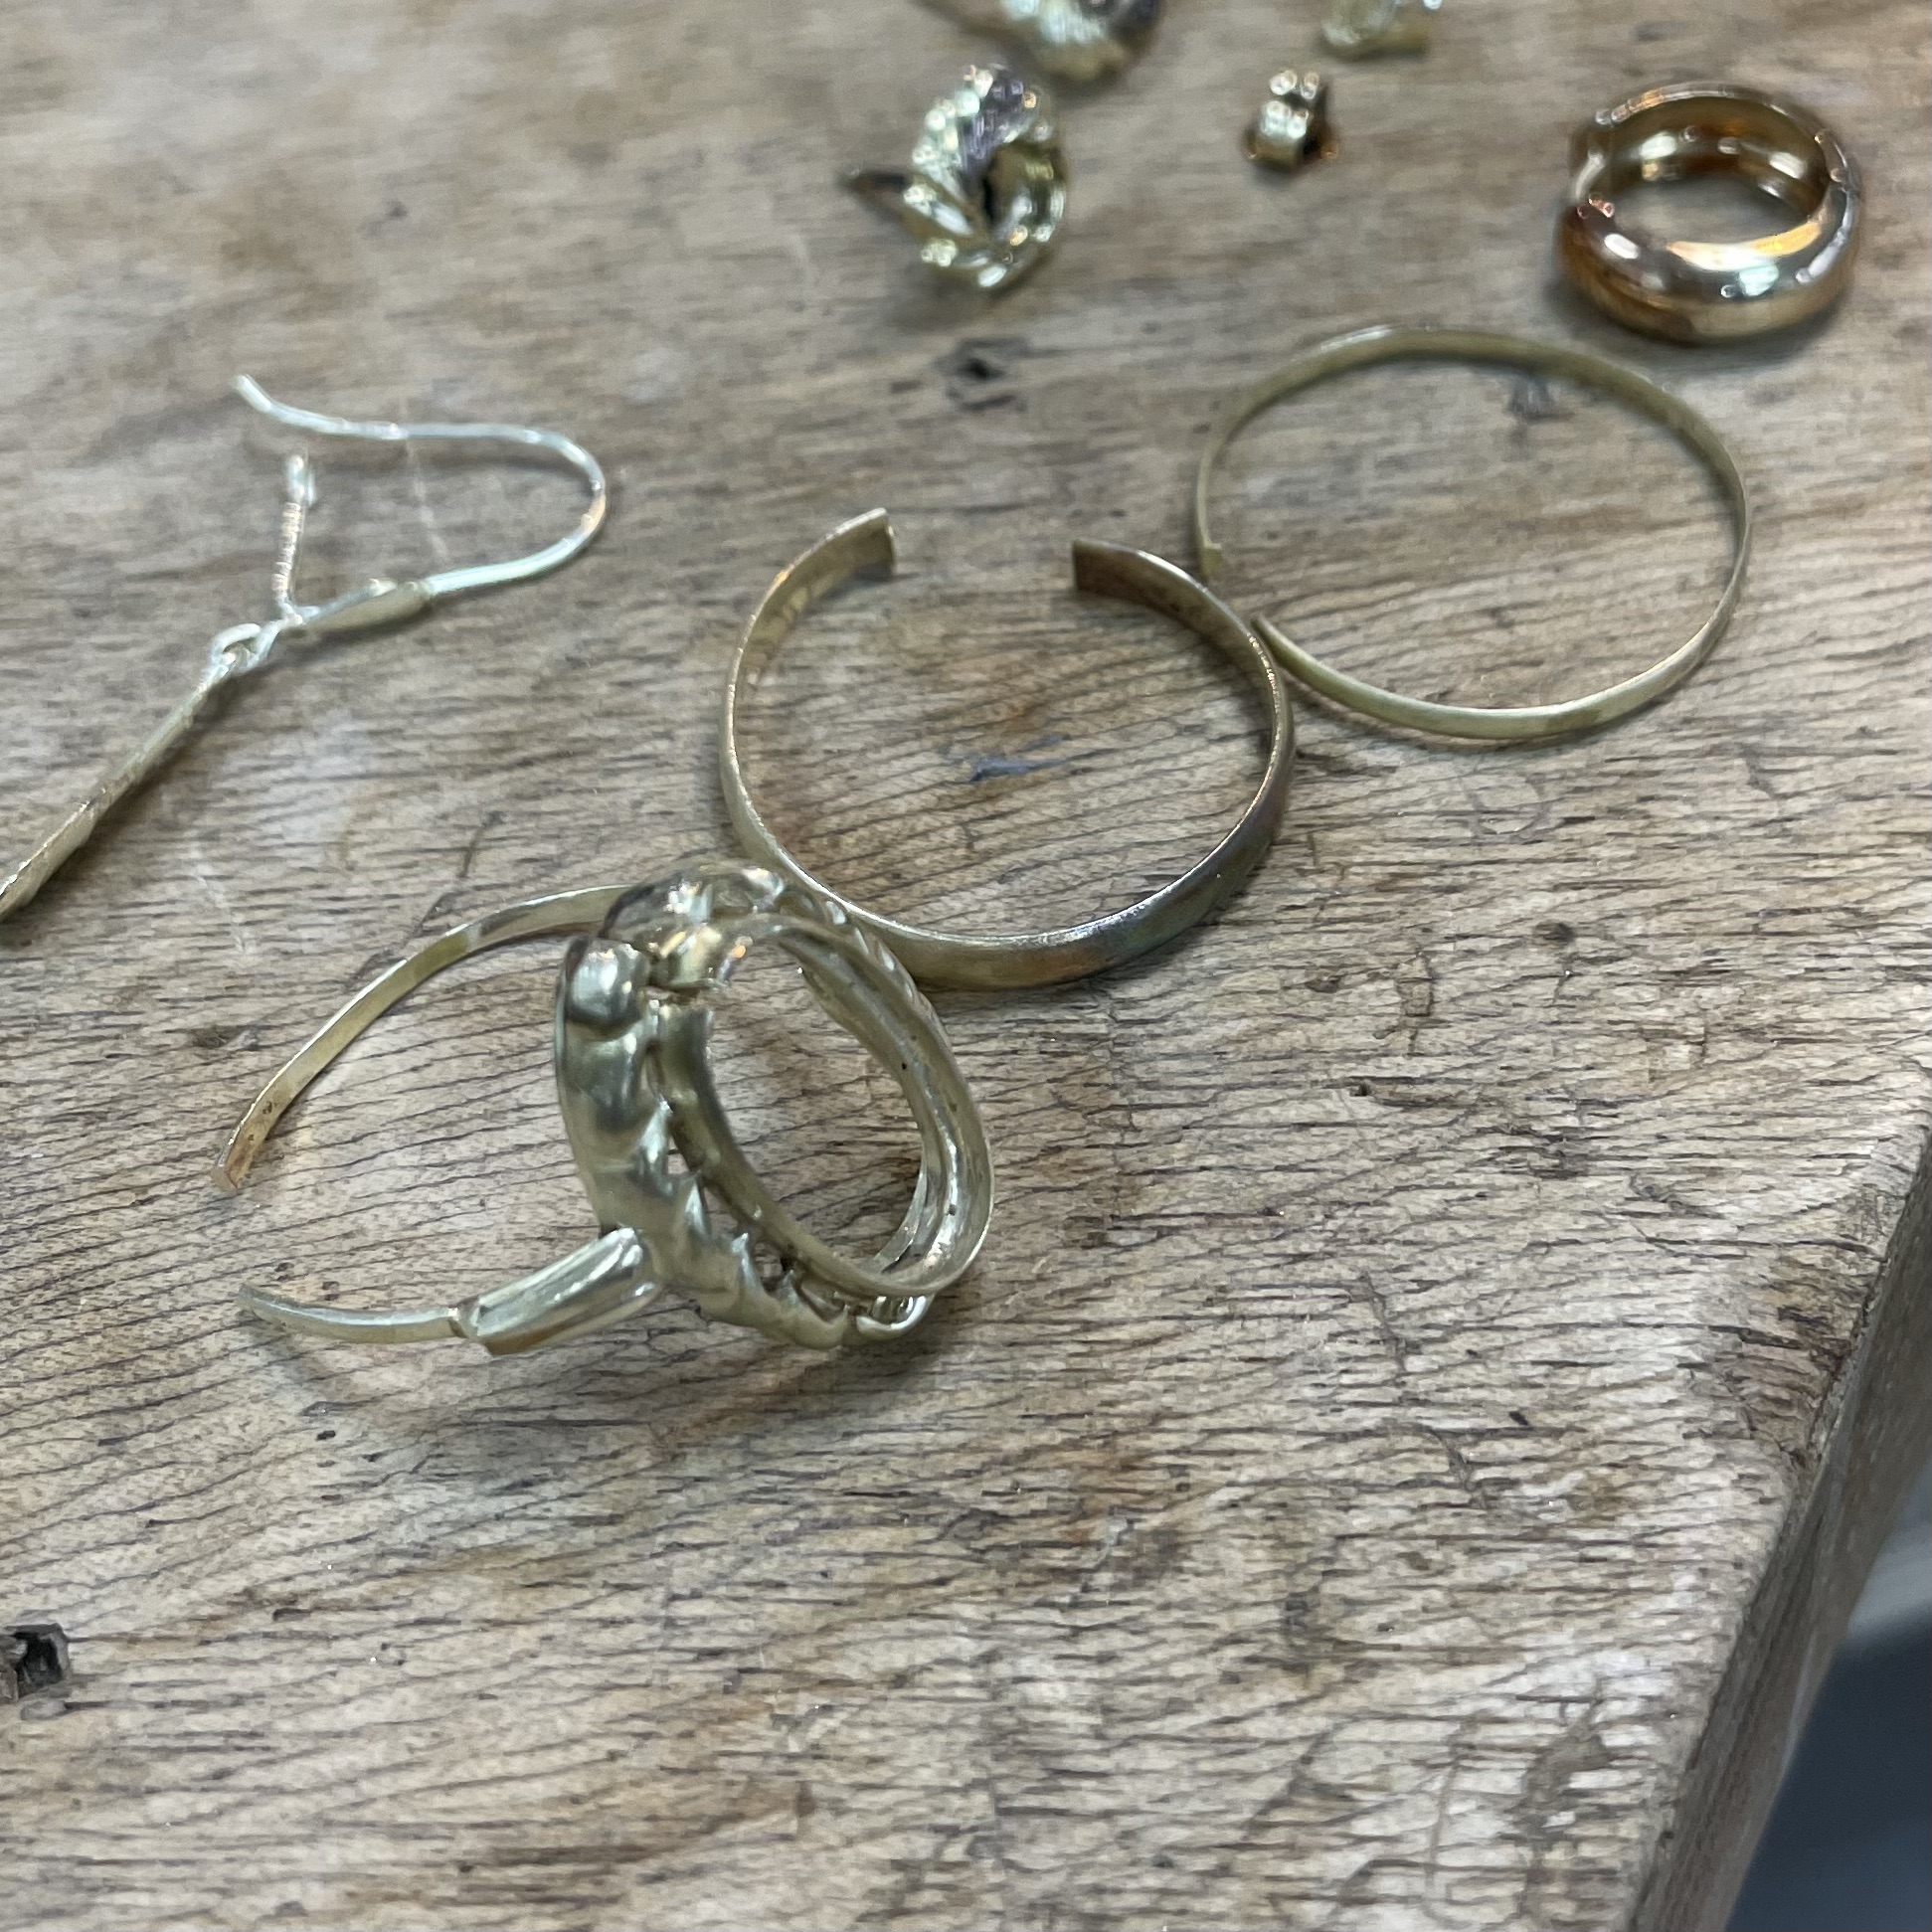 jewellery repairs | jewellery repair | beltrum | sarah kobak | gold jewellery | repairs